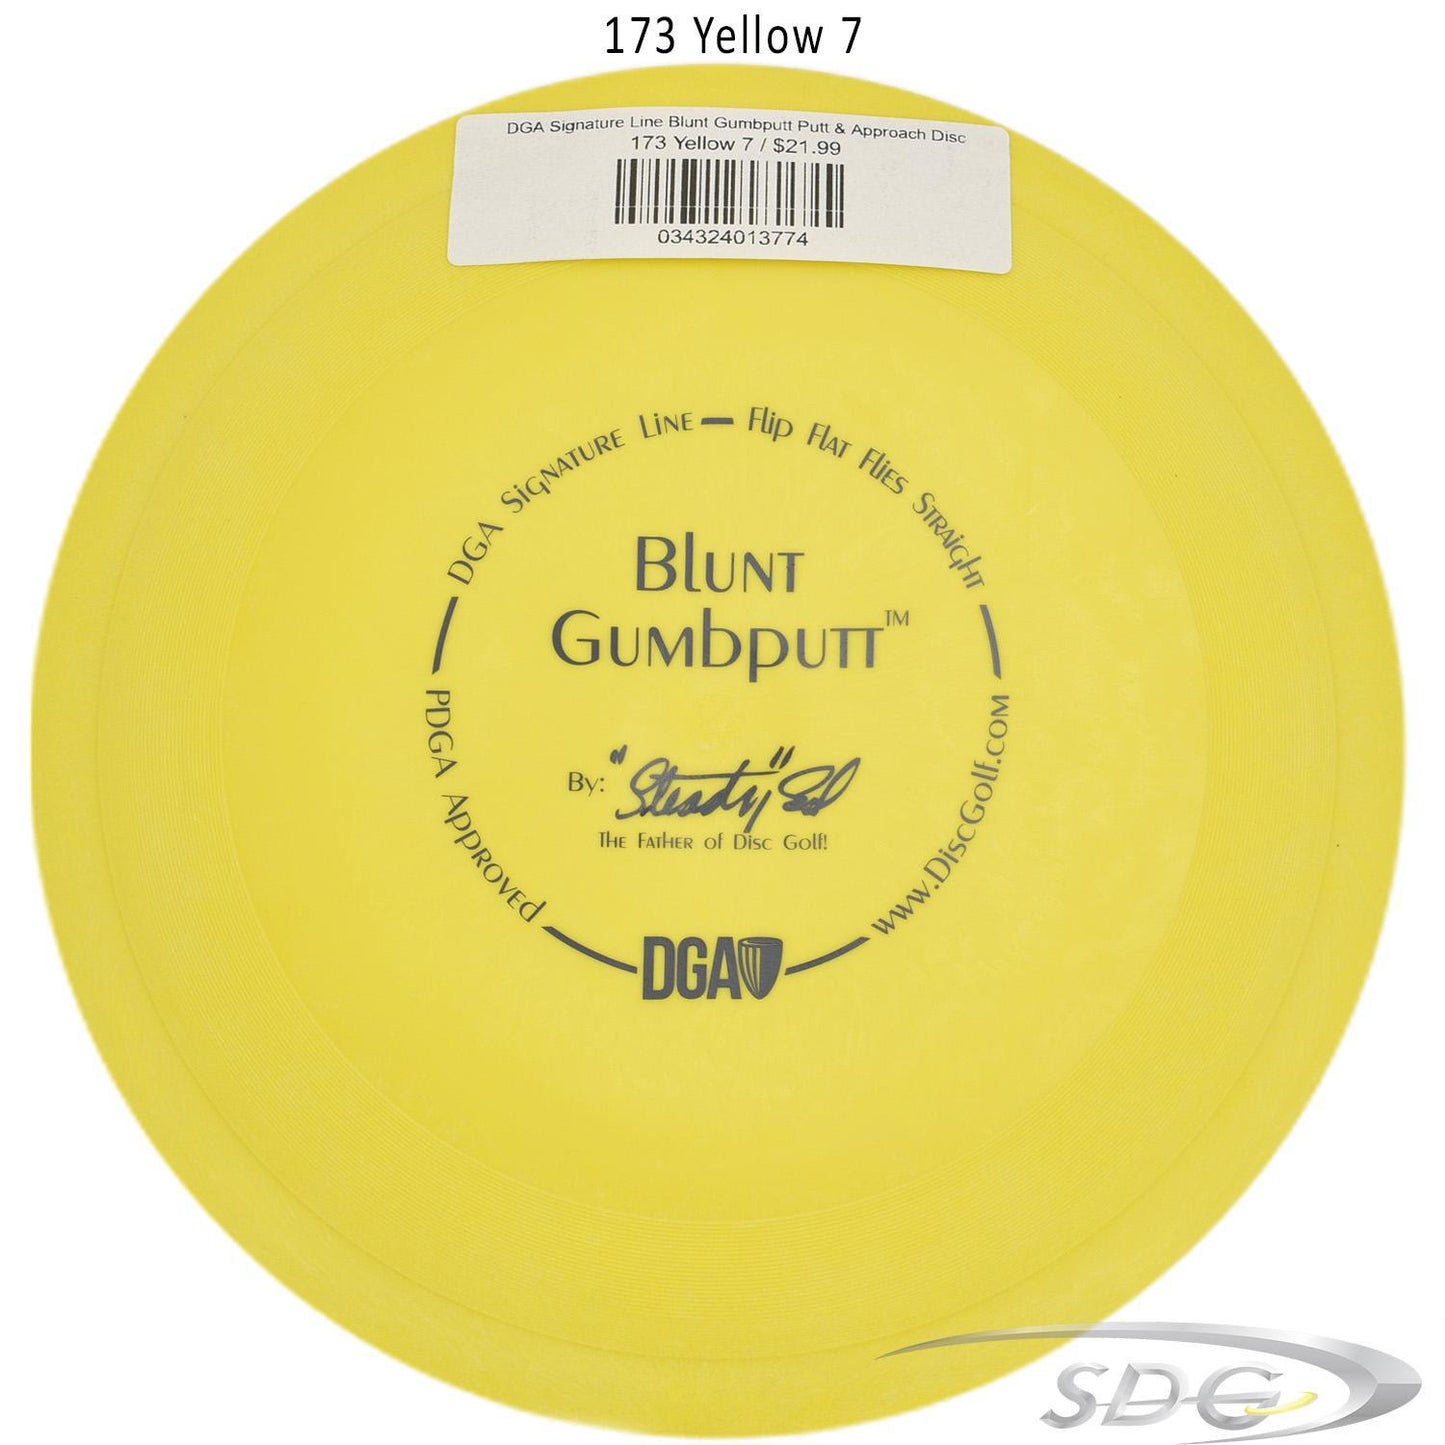 dga-signature-line-blunt-gumbputt-putt-approach-disc 173 Yellow 7 